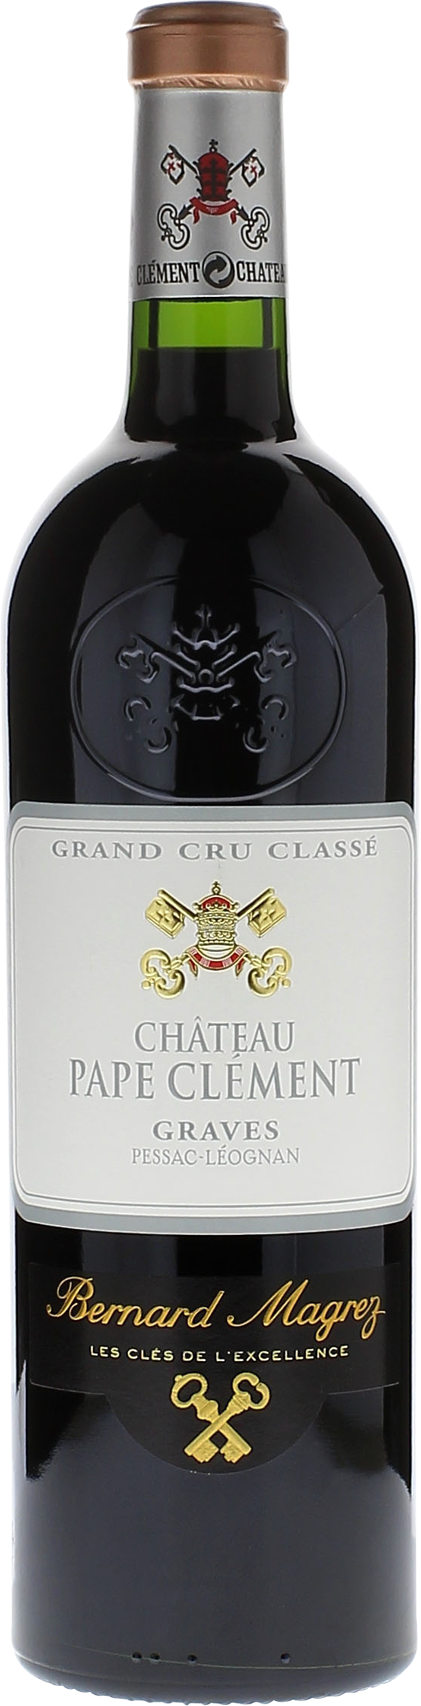 Pape clement rouge 1998 Grand Cru Class Pessac-Lognan, Bordeaux rouge